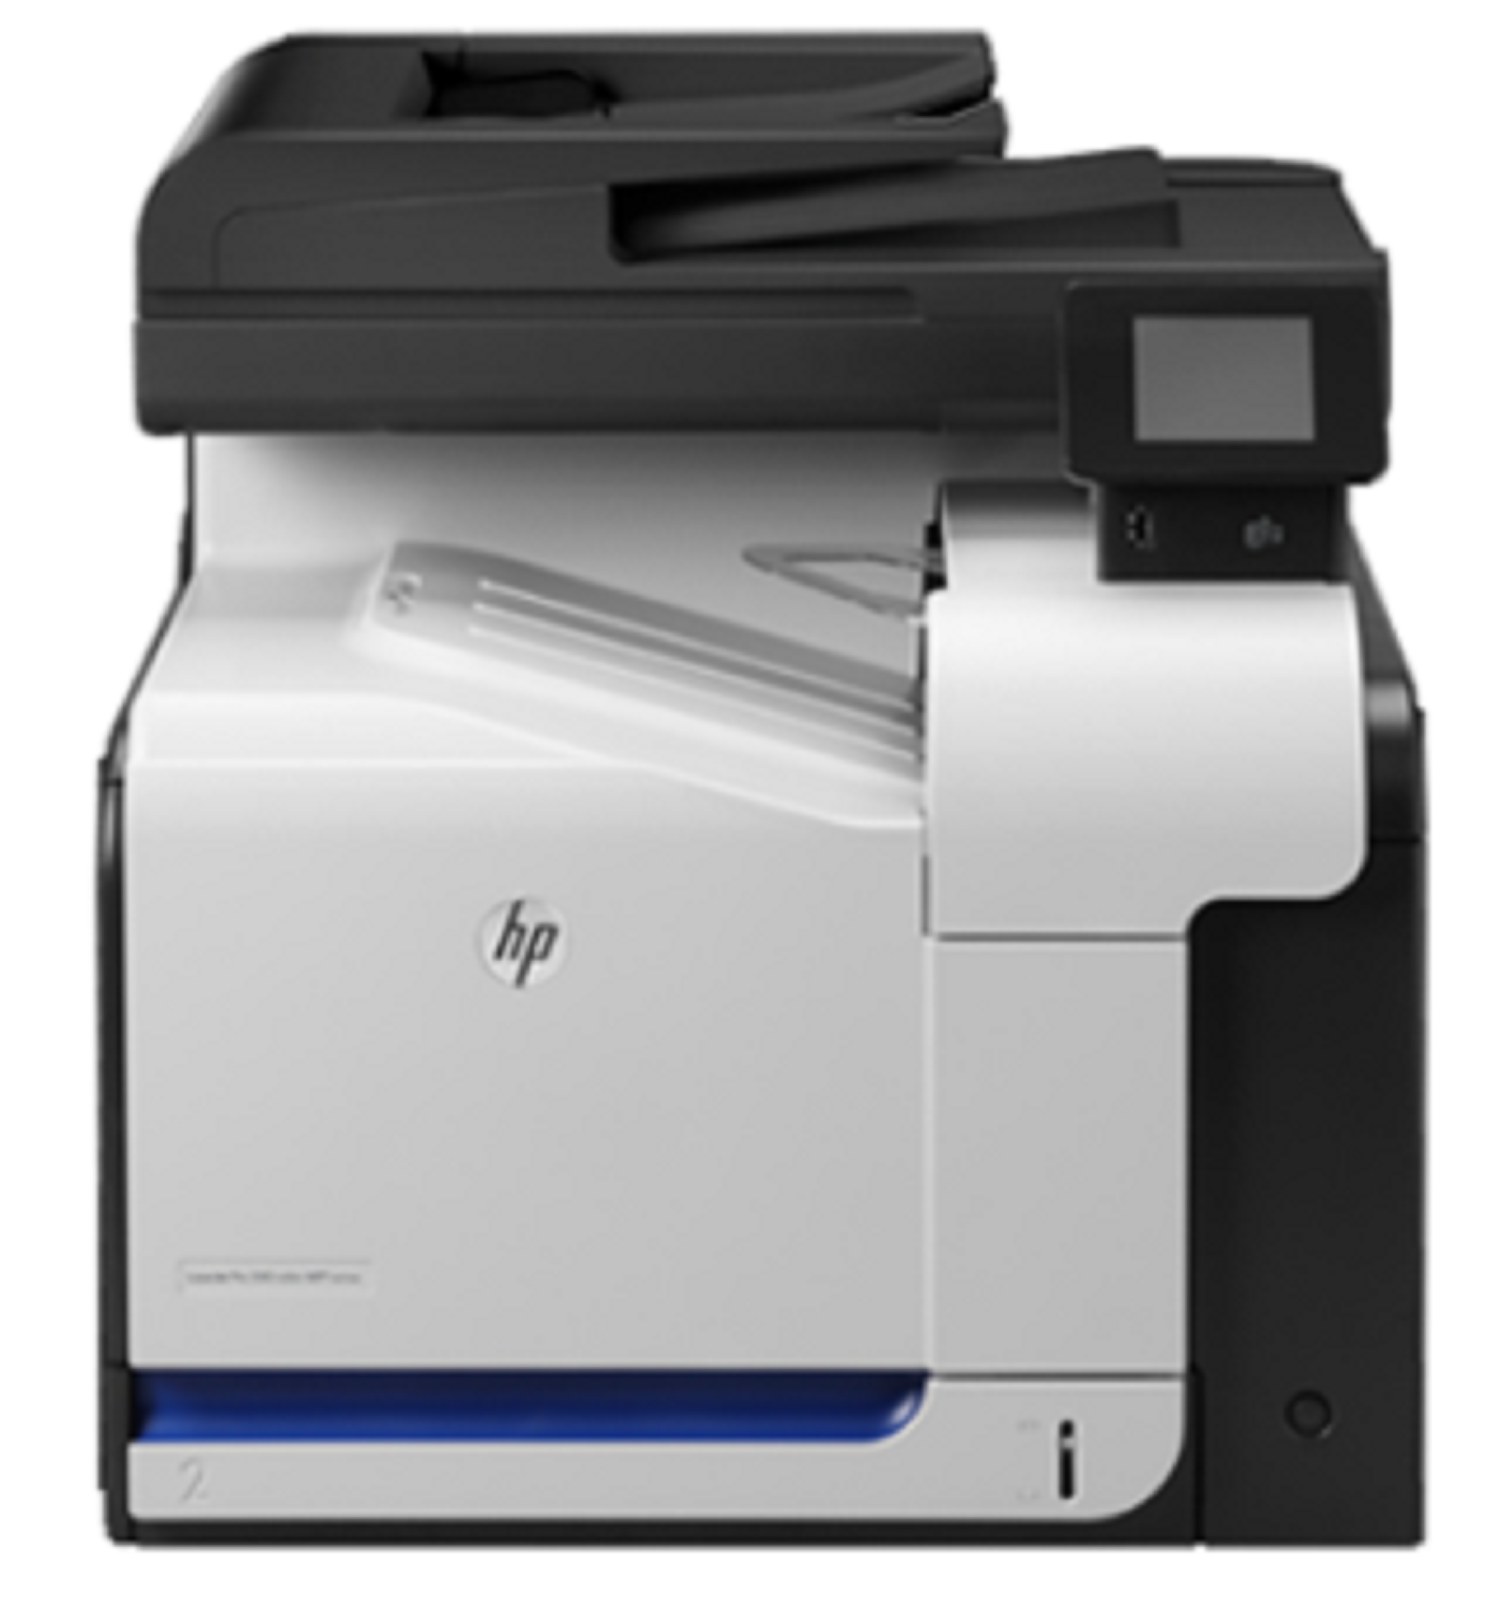 МФУ HP LaserJet Pro 500 color MFP M570dw цена